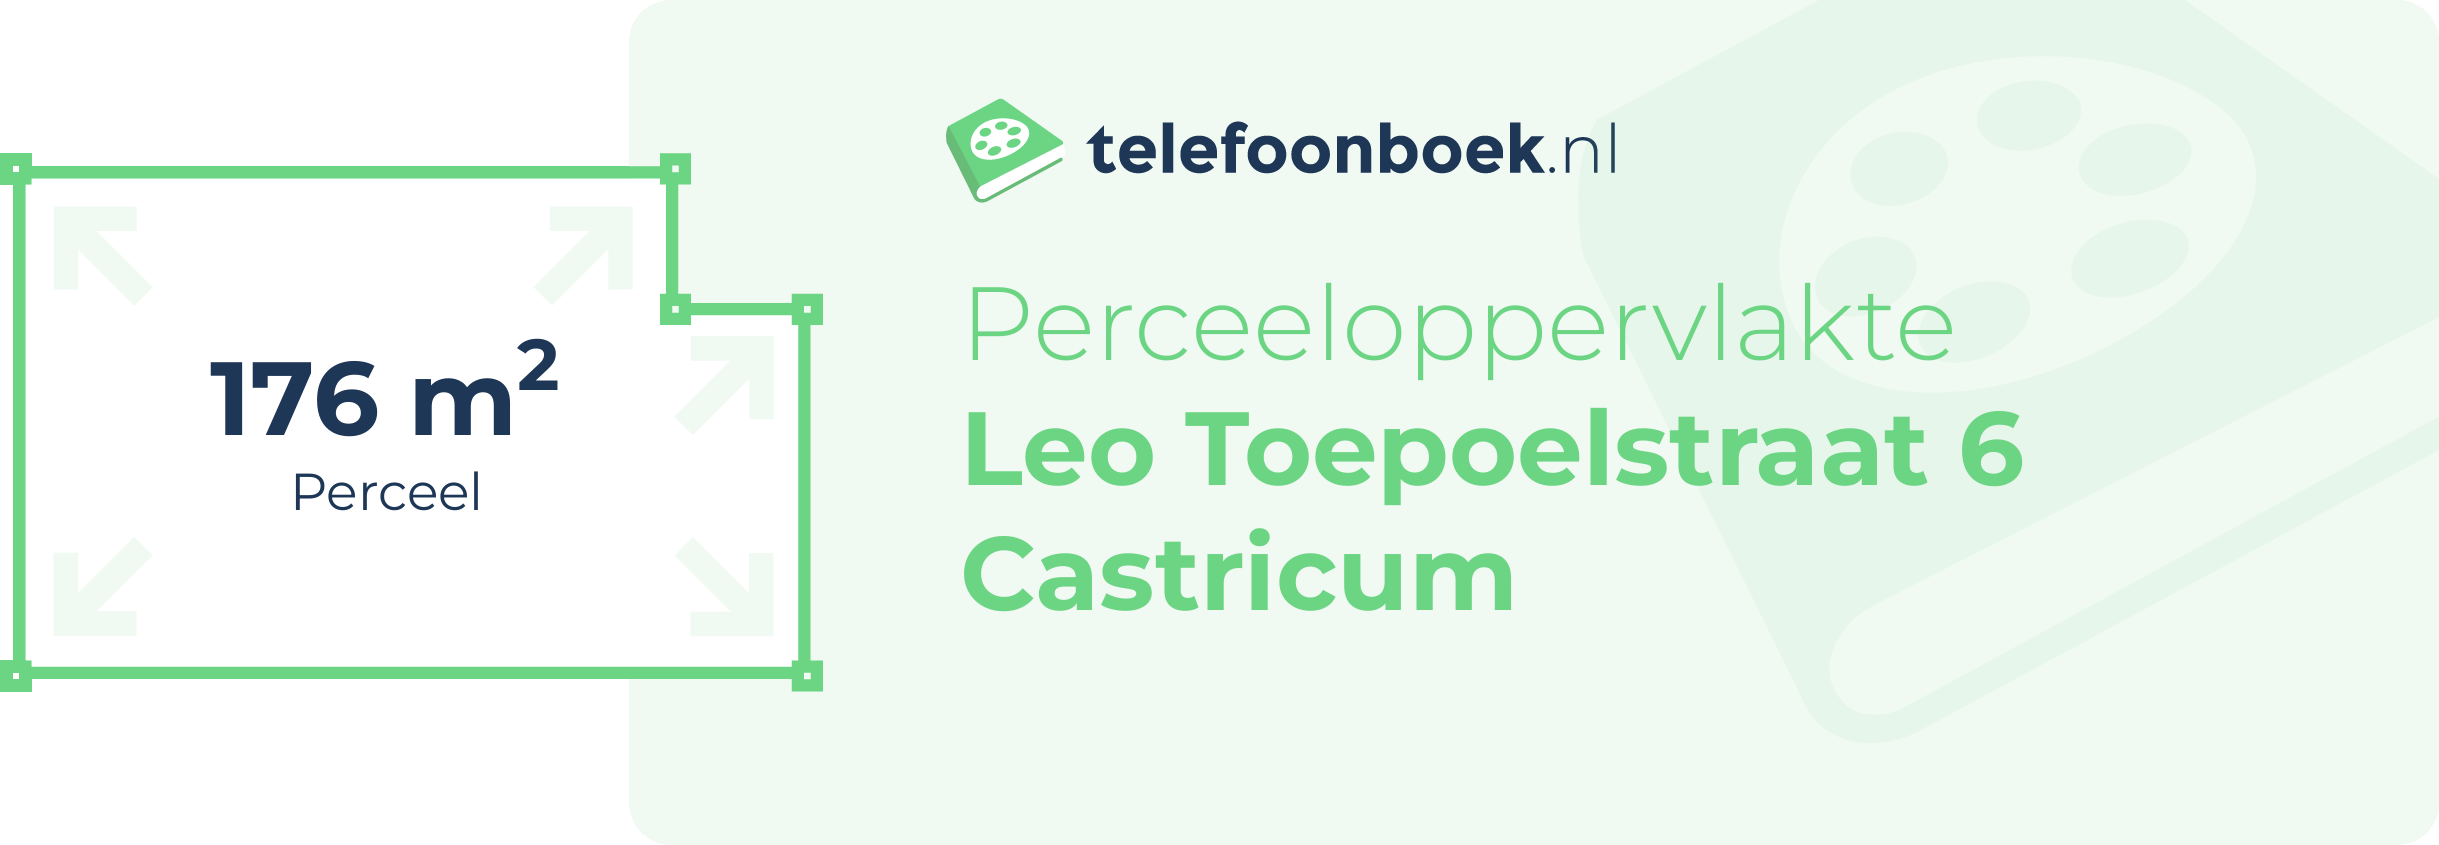 Perceeloppervlakte Leo Toepoelstraat 6 Castricum